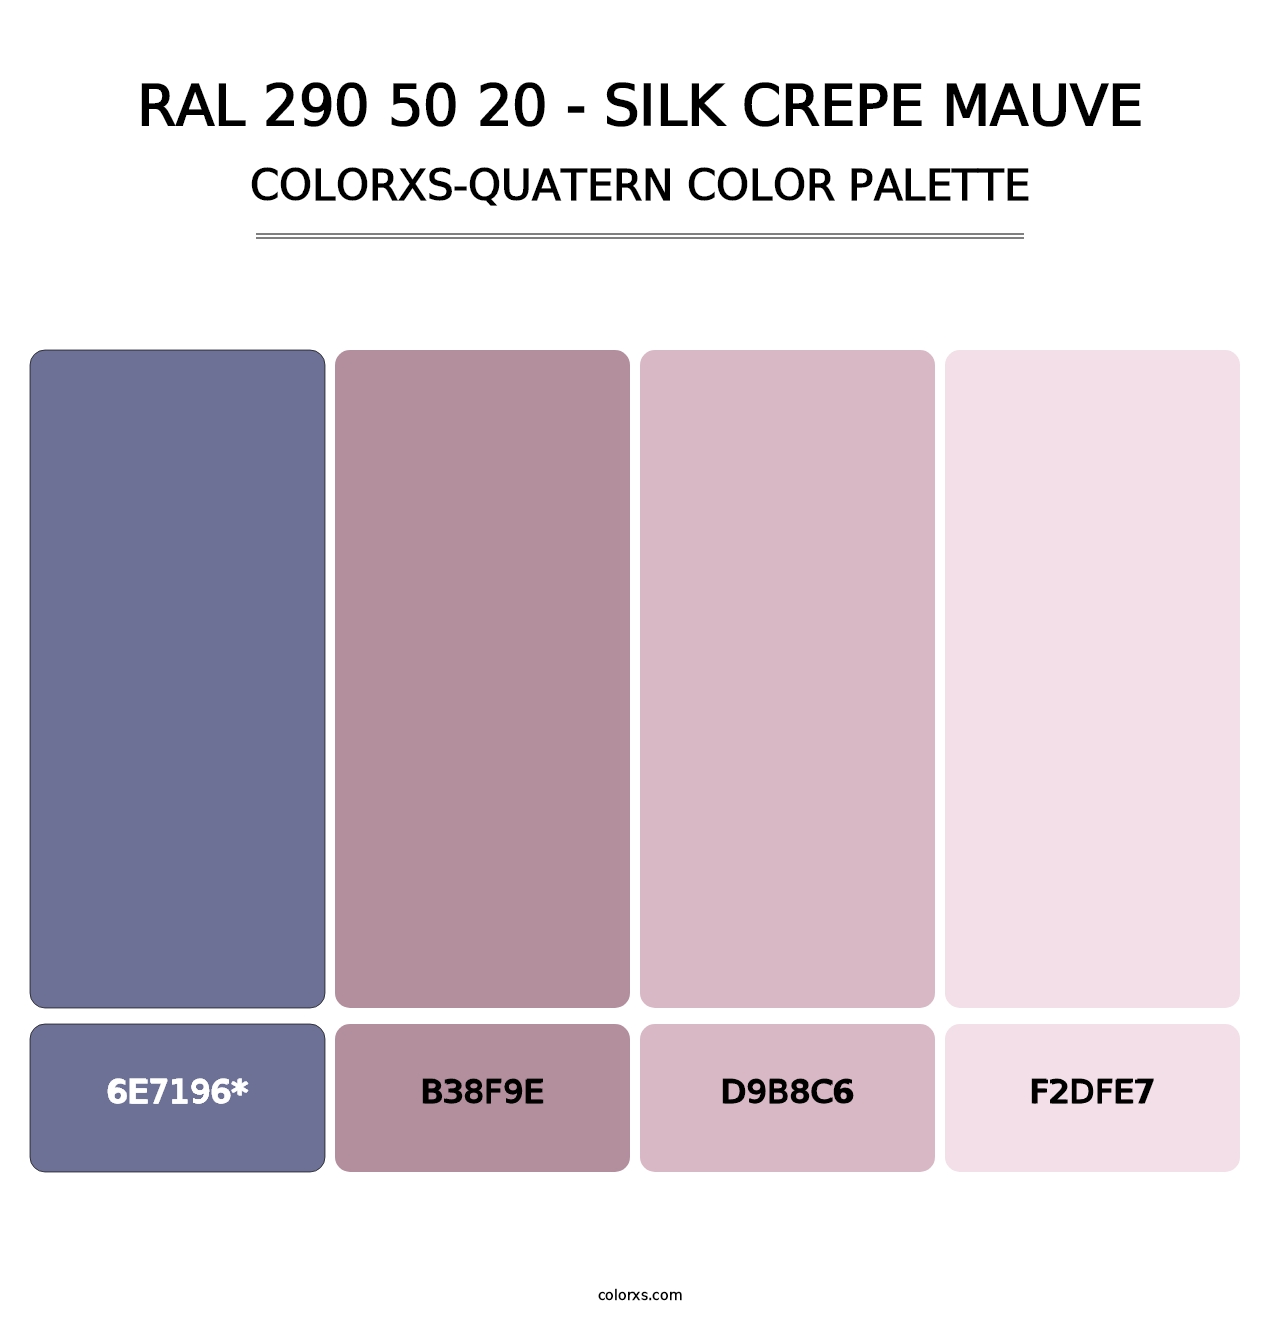 RAL 290 50 20 - Silk Crepe Mauve - Colorxs Quatern Palette